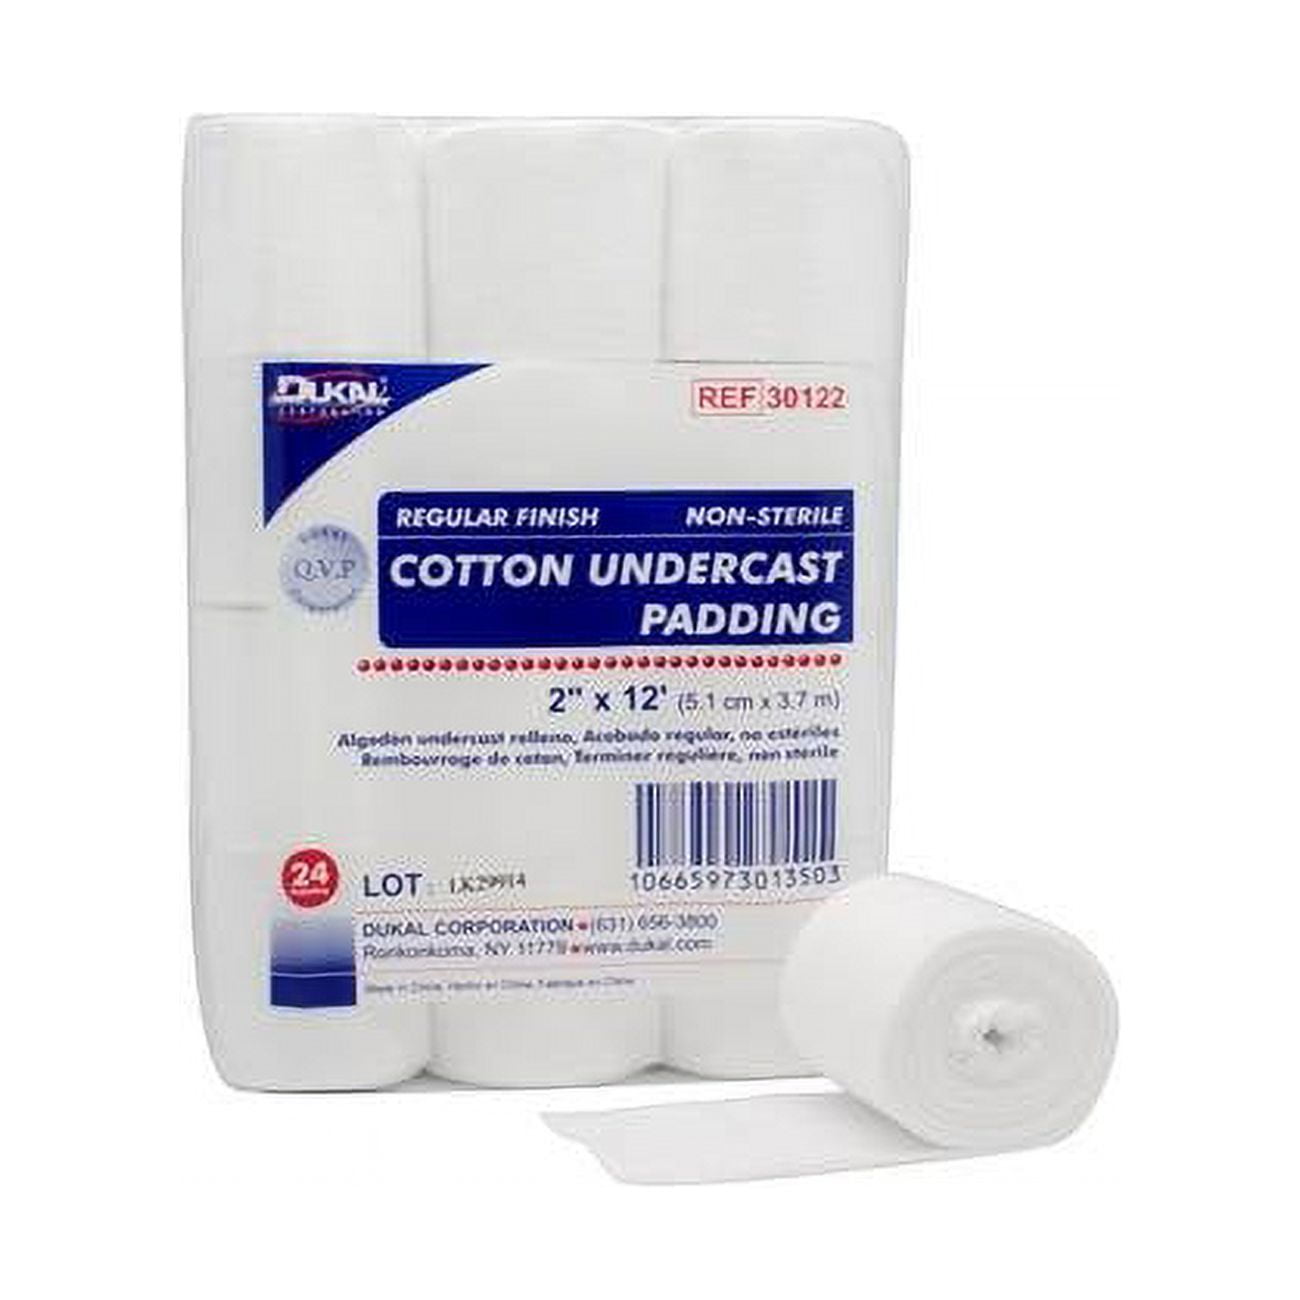 30122 2 X 4 Yards Cotton Undercast Padding, Regular